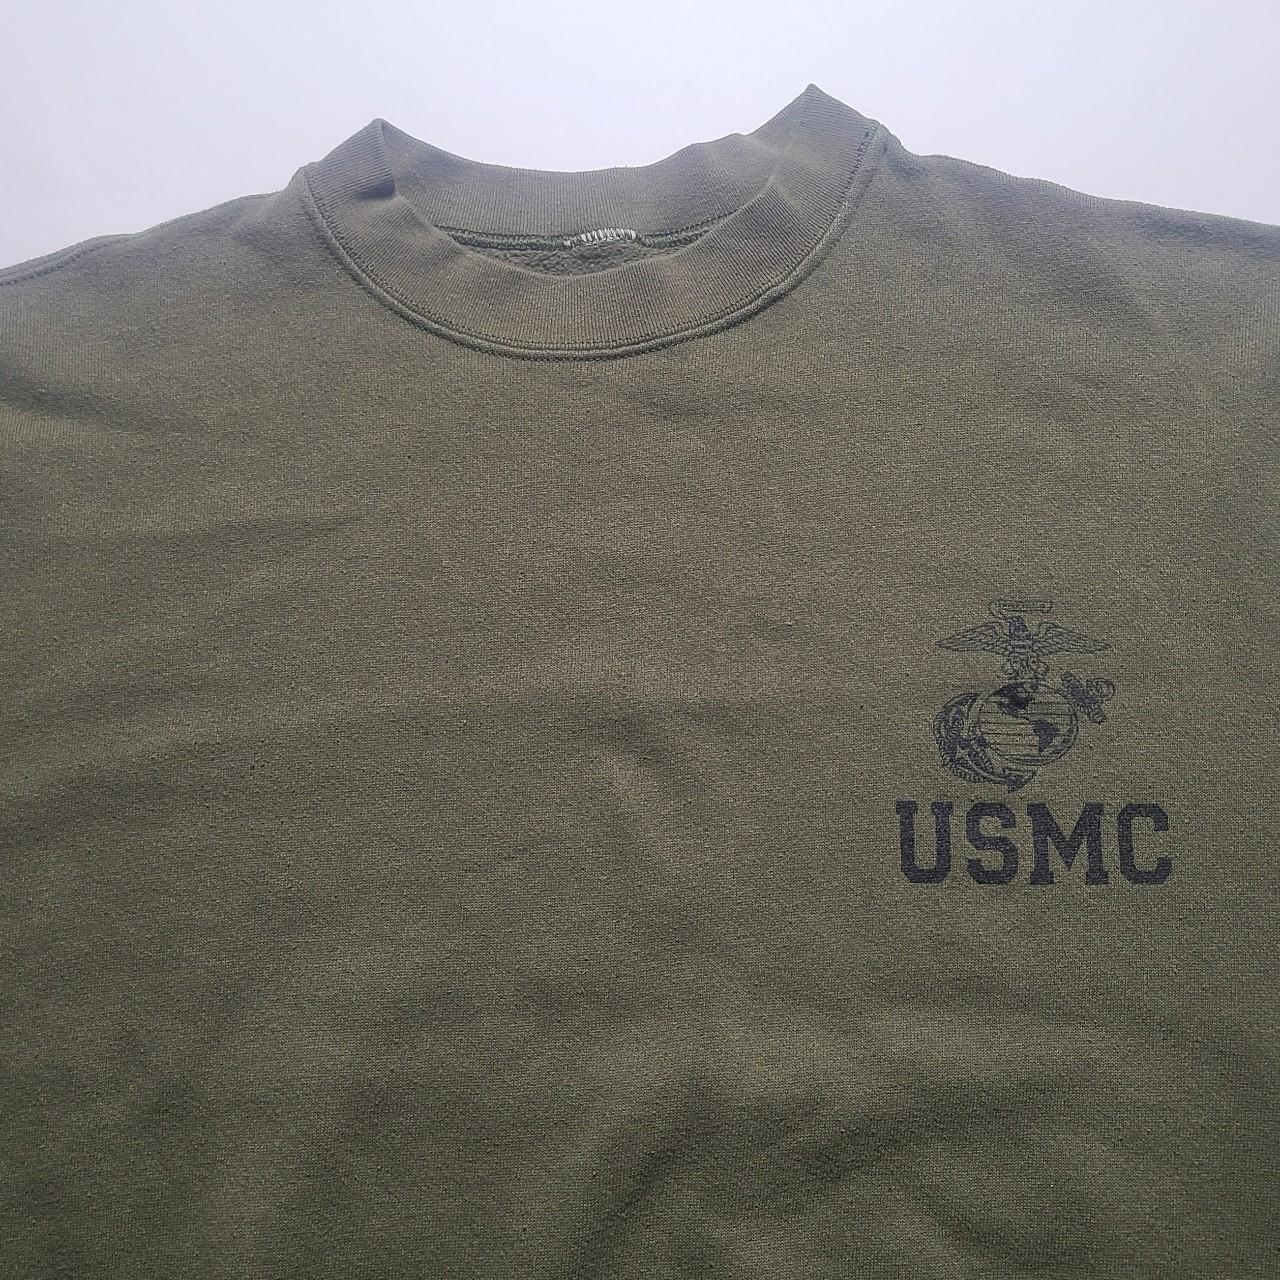 Vintage Marines usmc sweatshirt sz M L 24